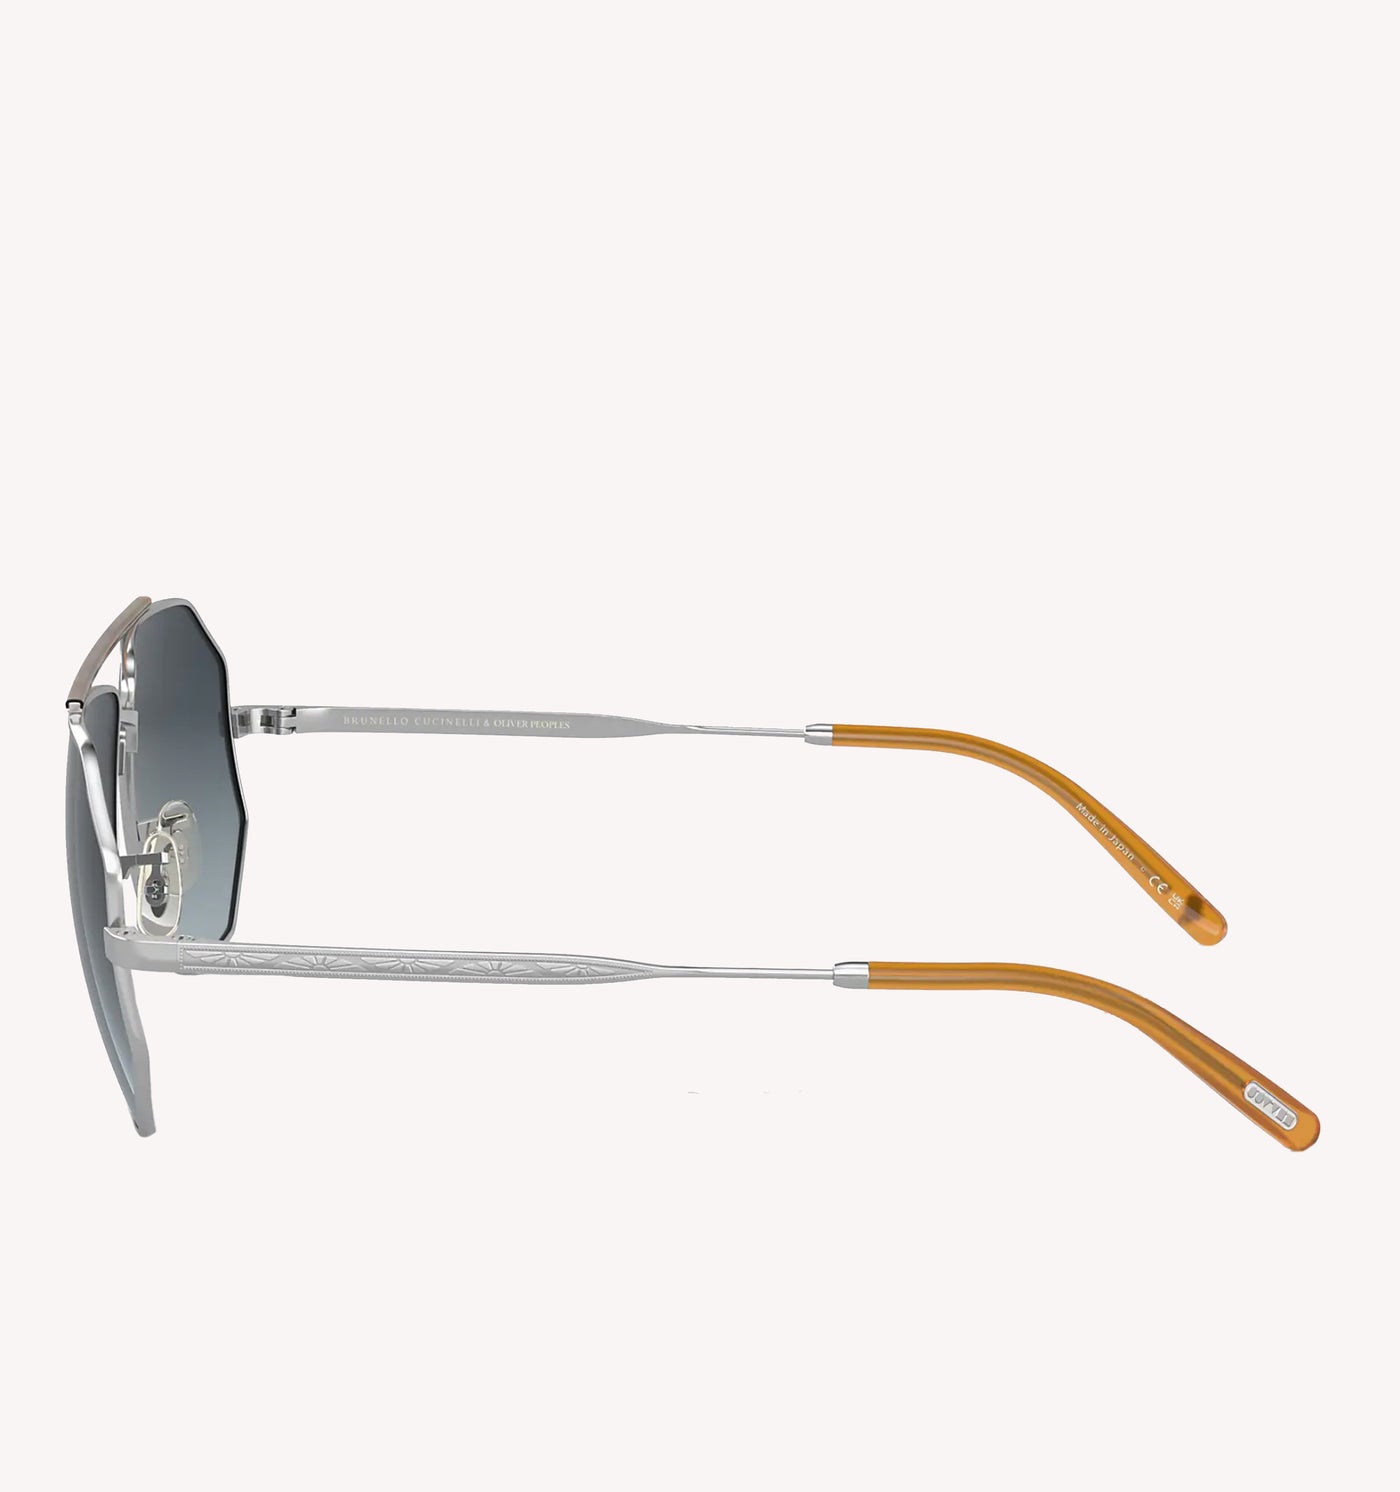 Oliver Peoples X Brunello Cucinelli Moraldo Sunglasses in Silver